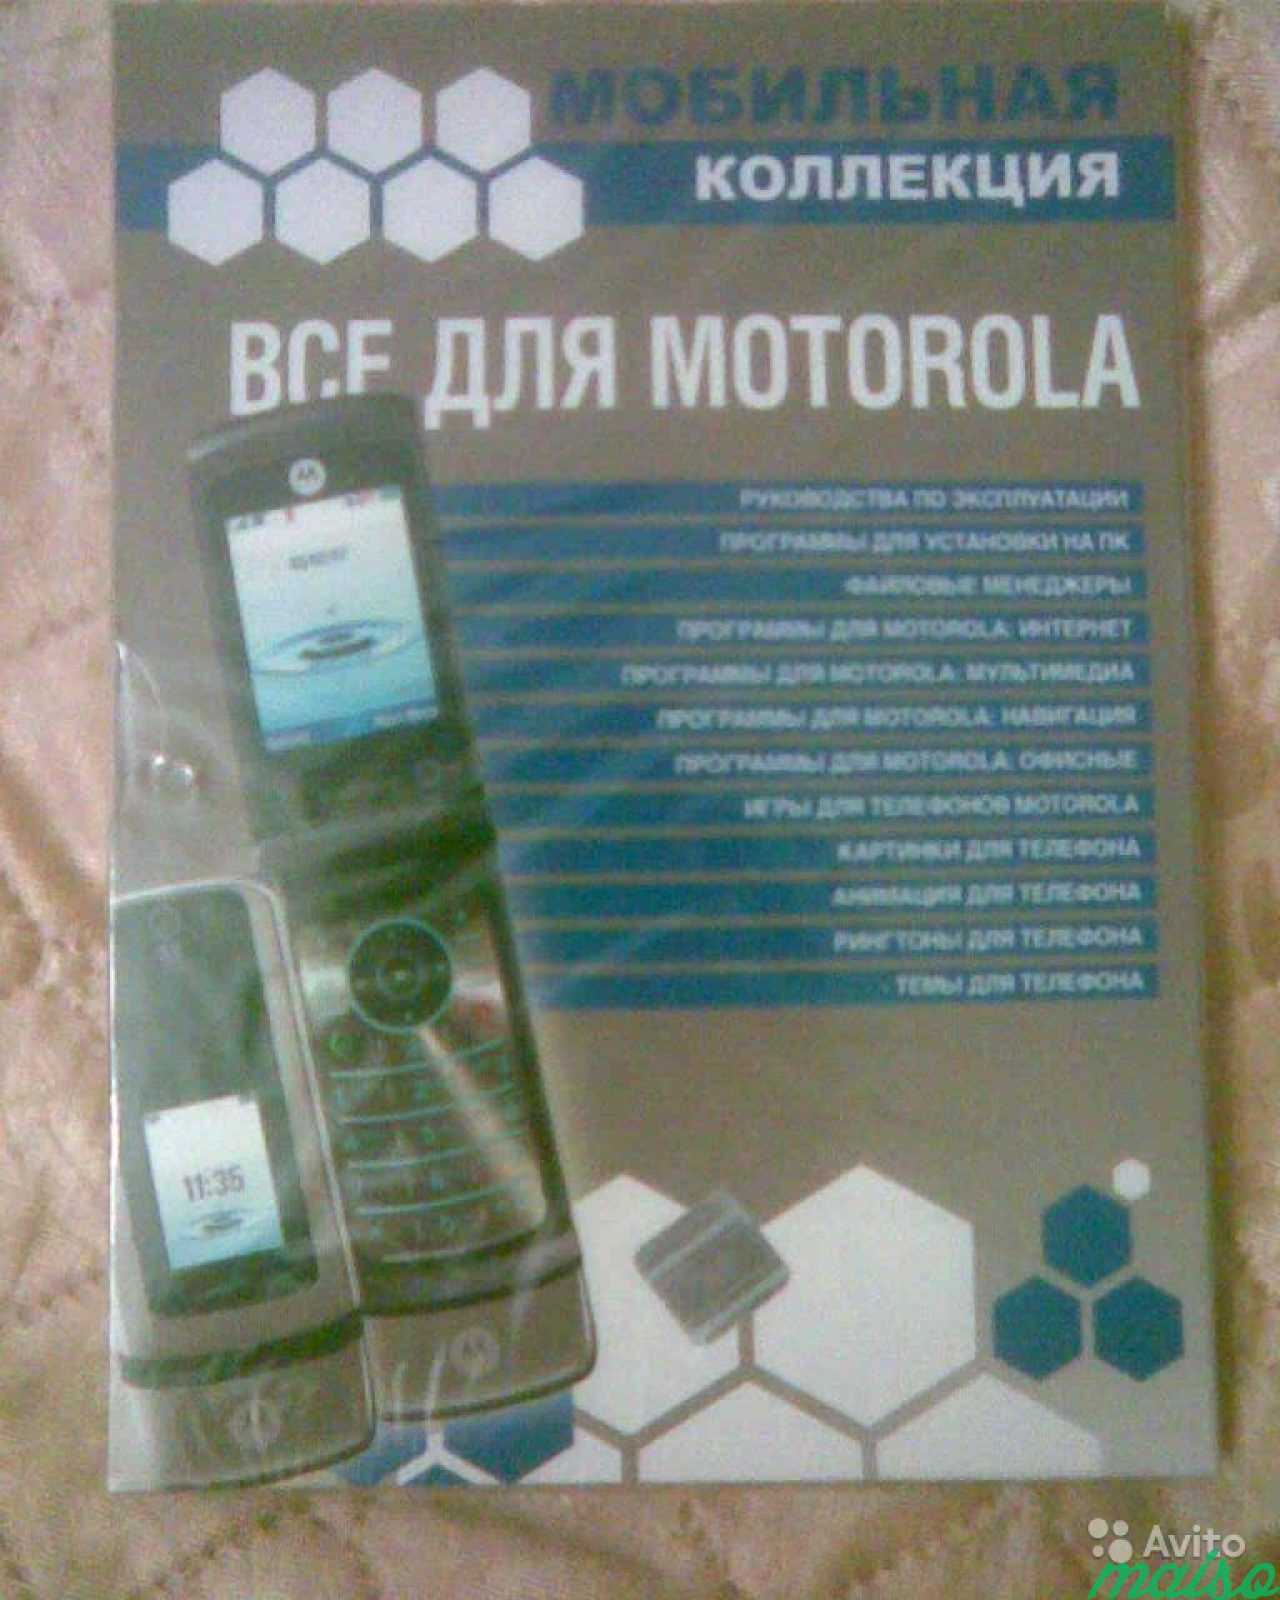 Прогрыммы для мобильных телефонов в Санкт-Петербурге. Фото 3